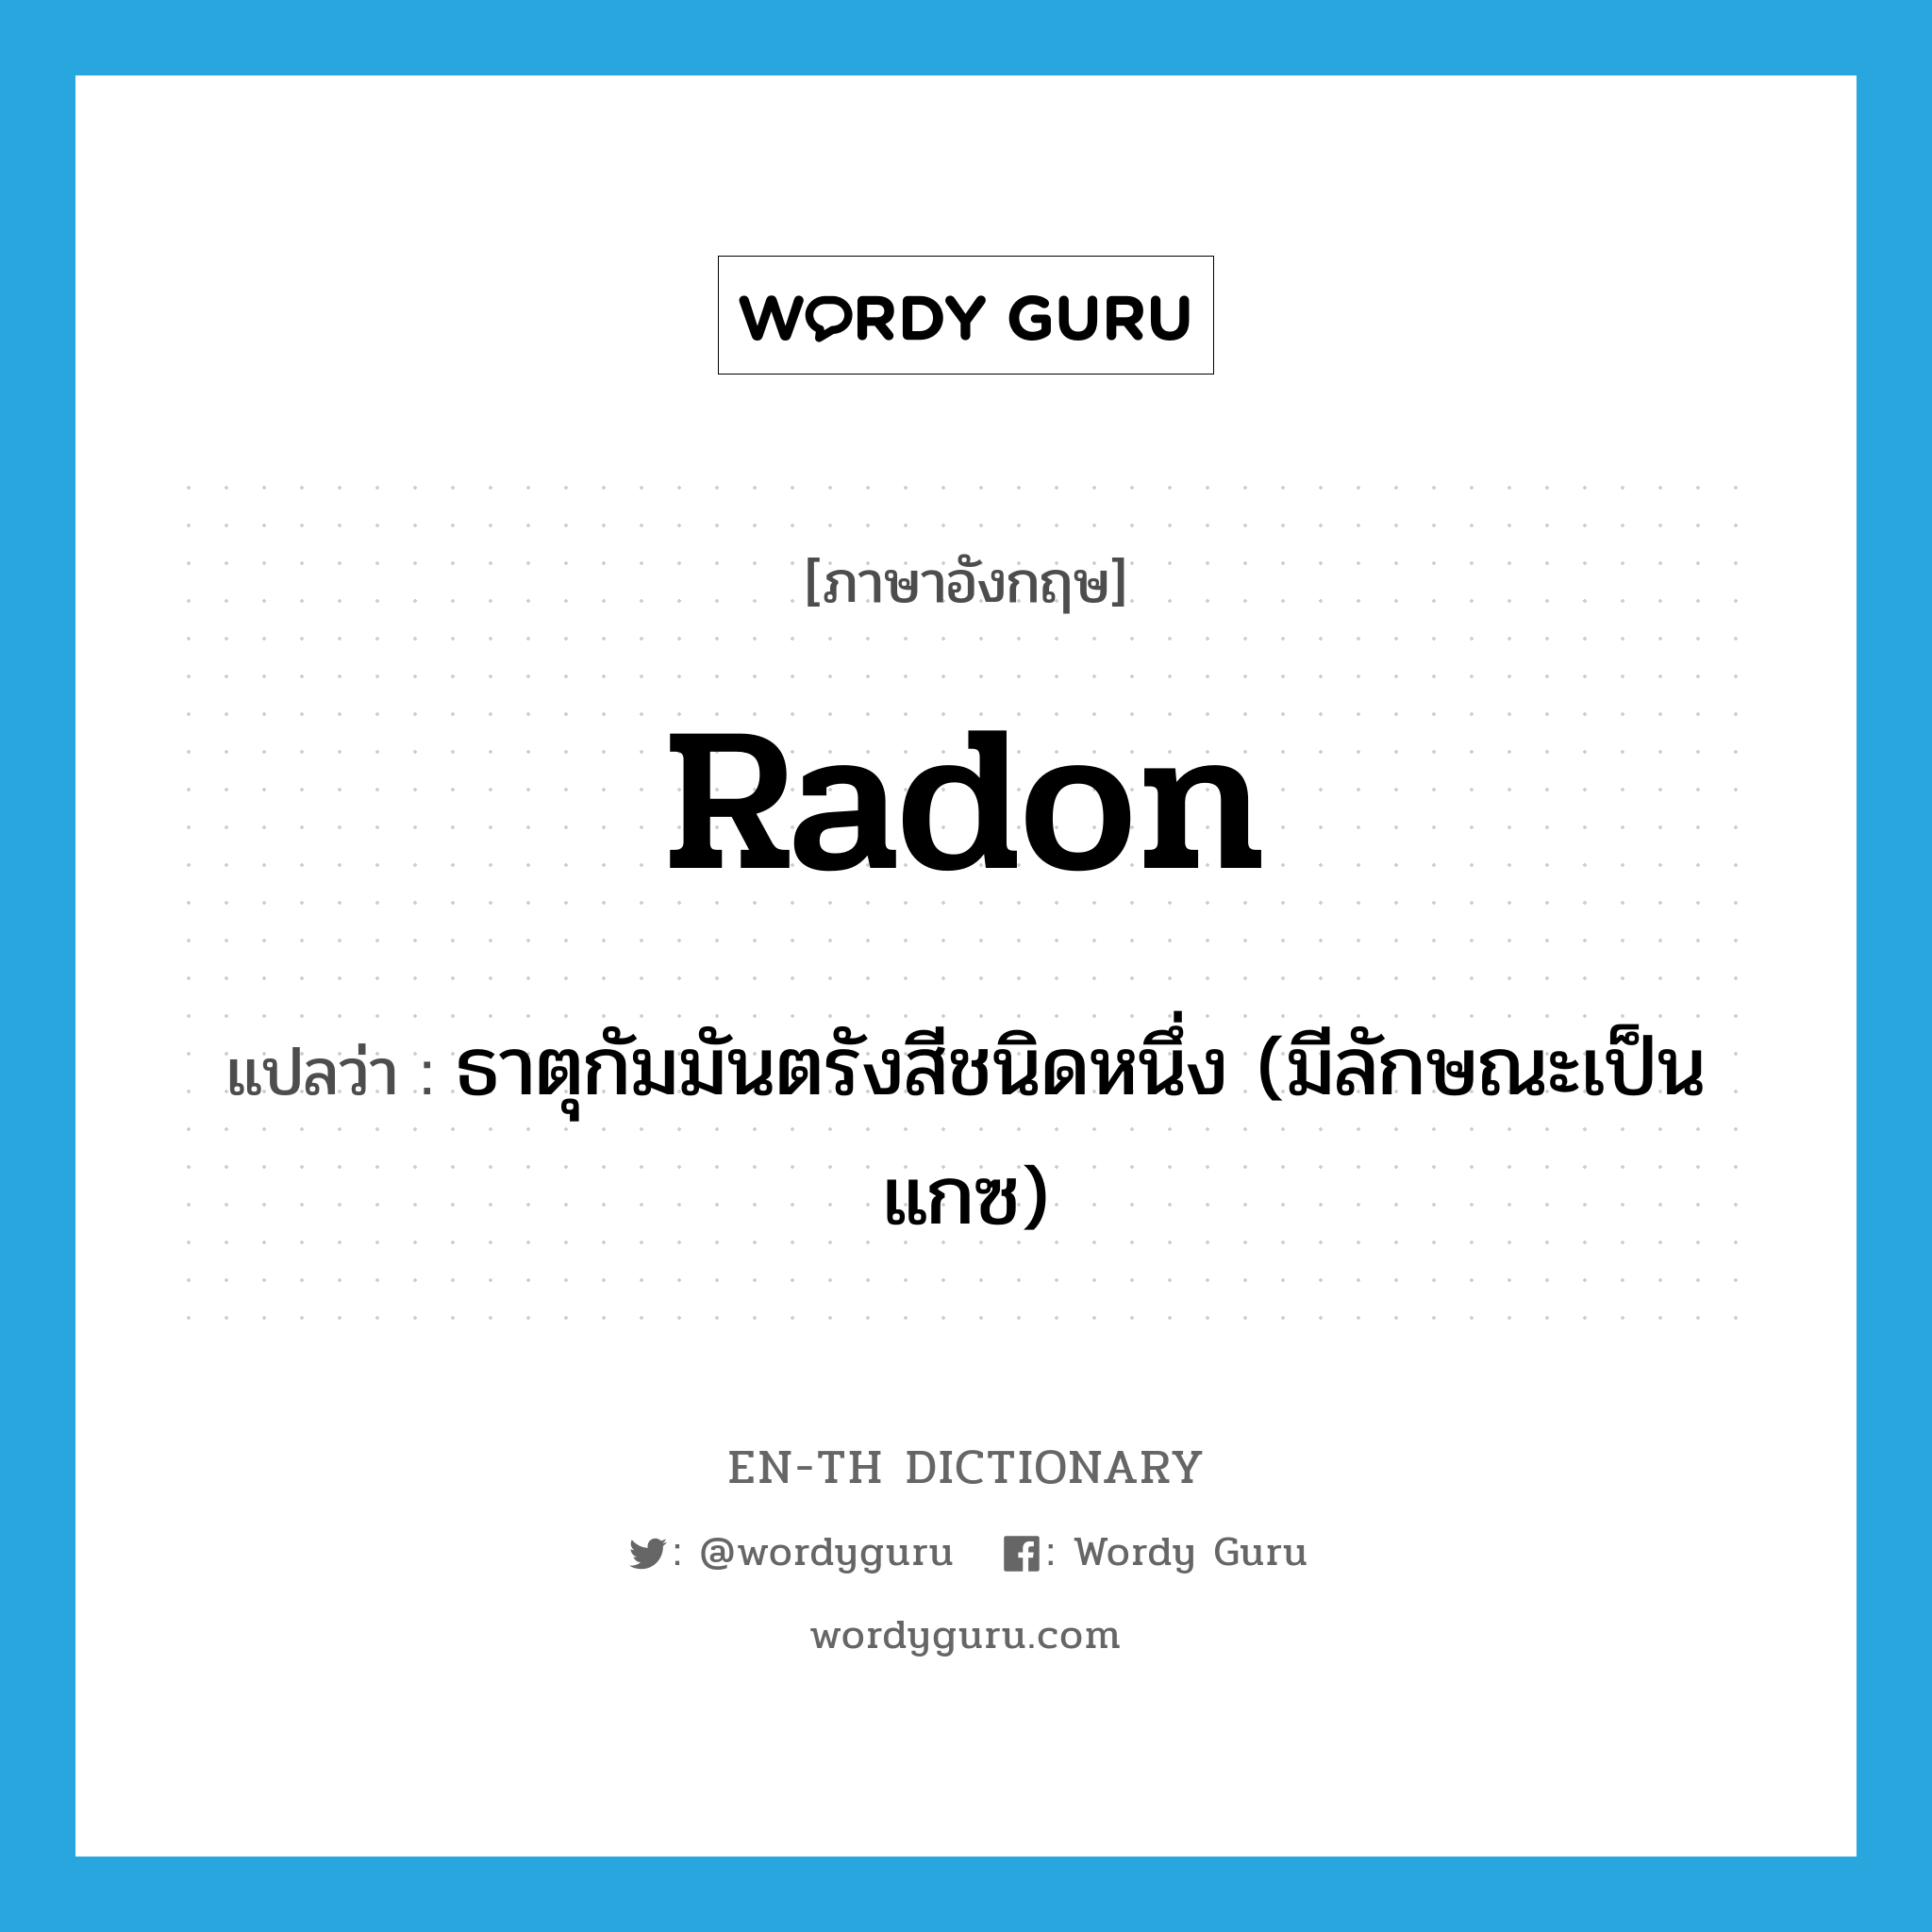 radon แปลว่า?, คำศัพท์ภาษาอังกฤษ radon แปลว่า ธาตุกัมมันตรังสีชนิดหนึ่ง (มีลักษณะเป็นแกซ) ประเภท N หมวด N